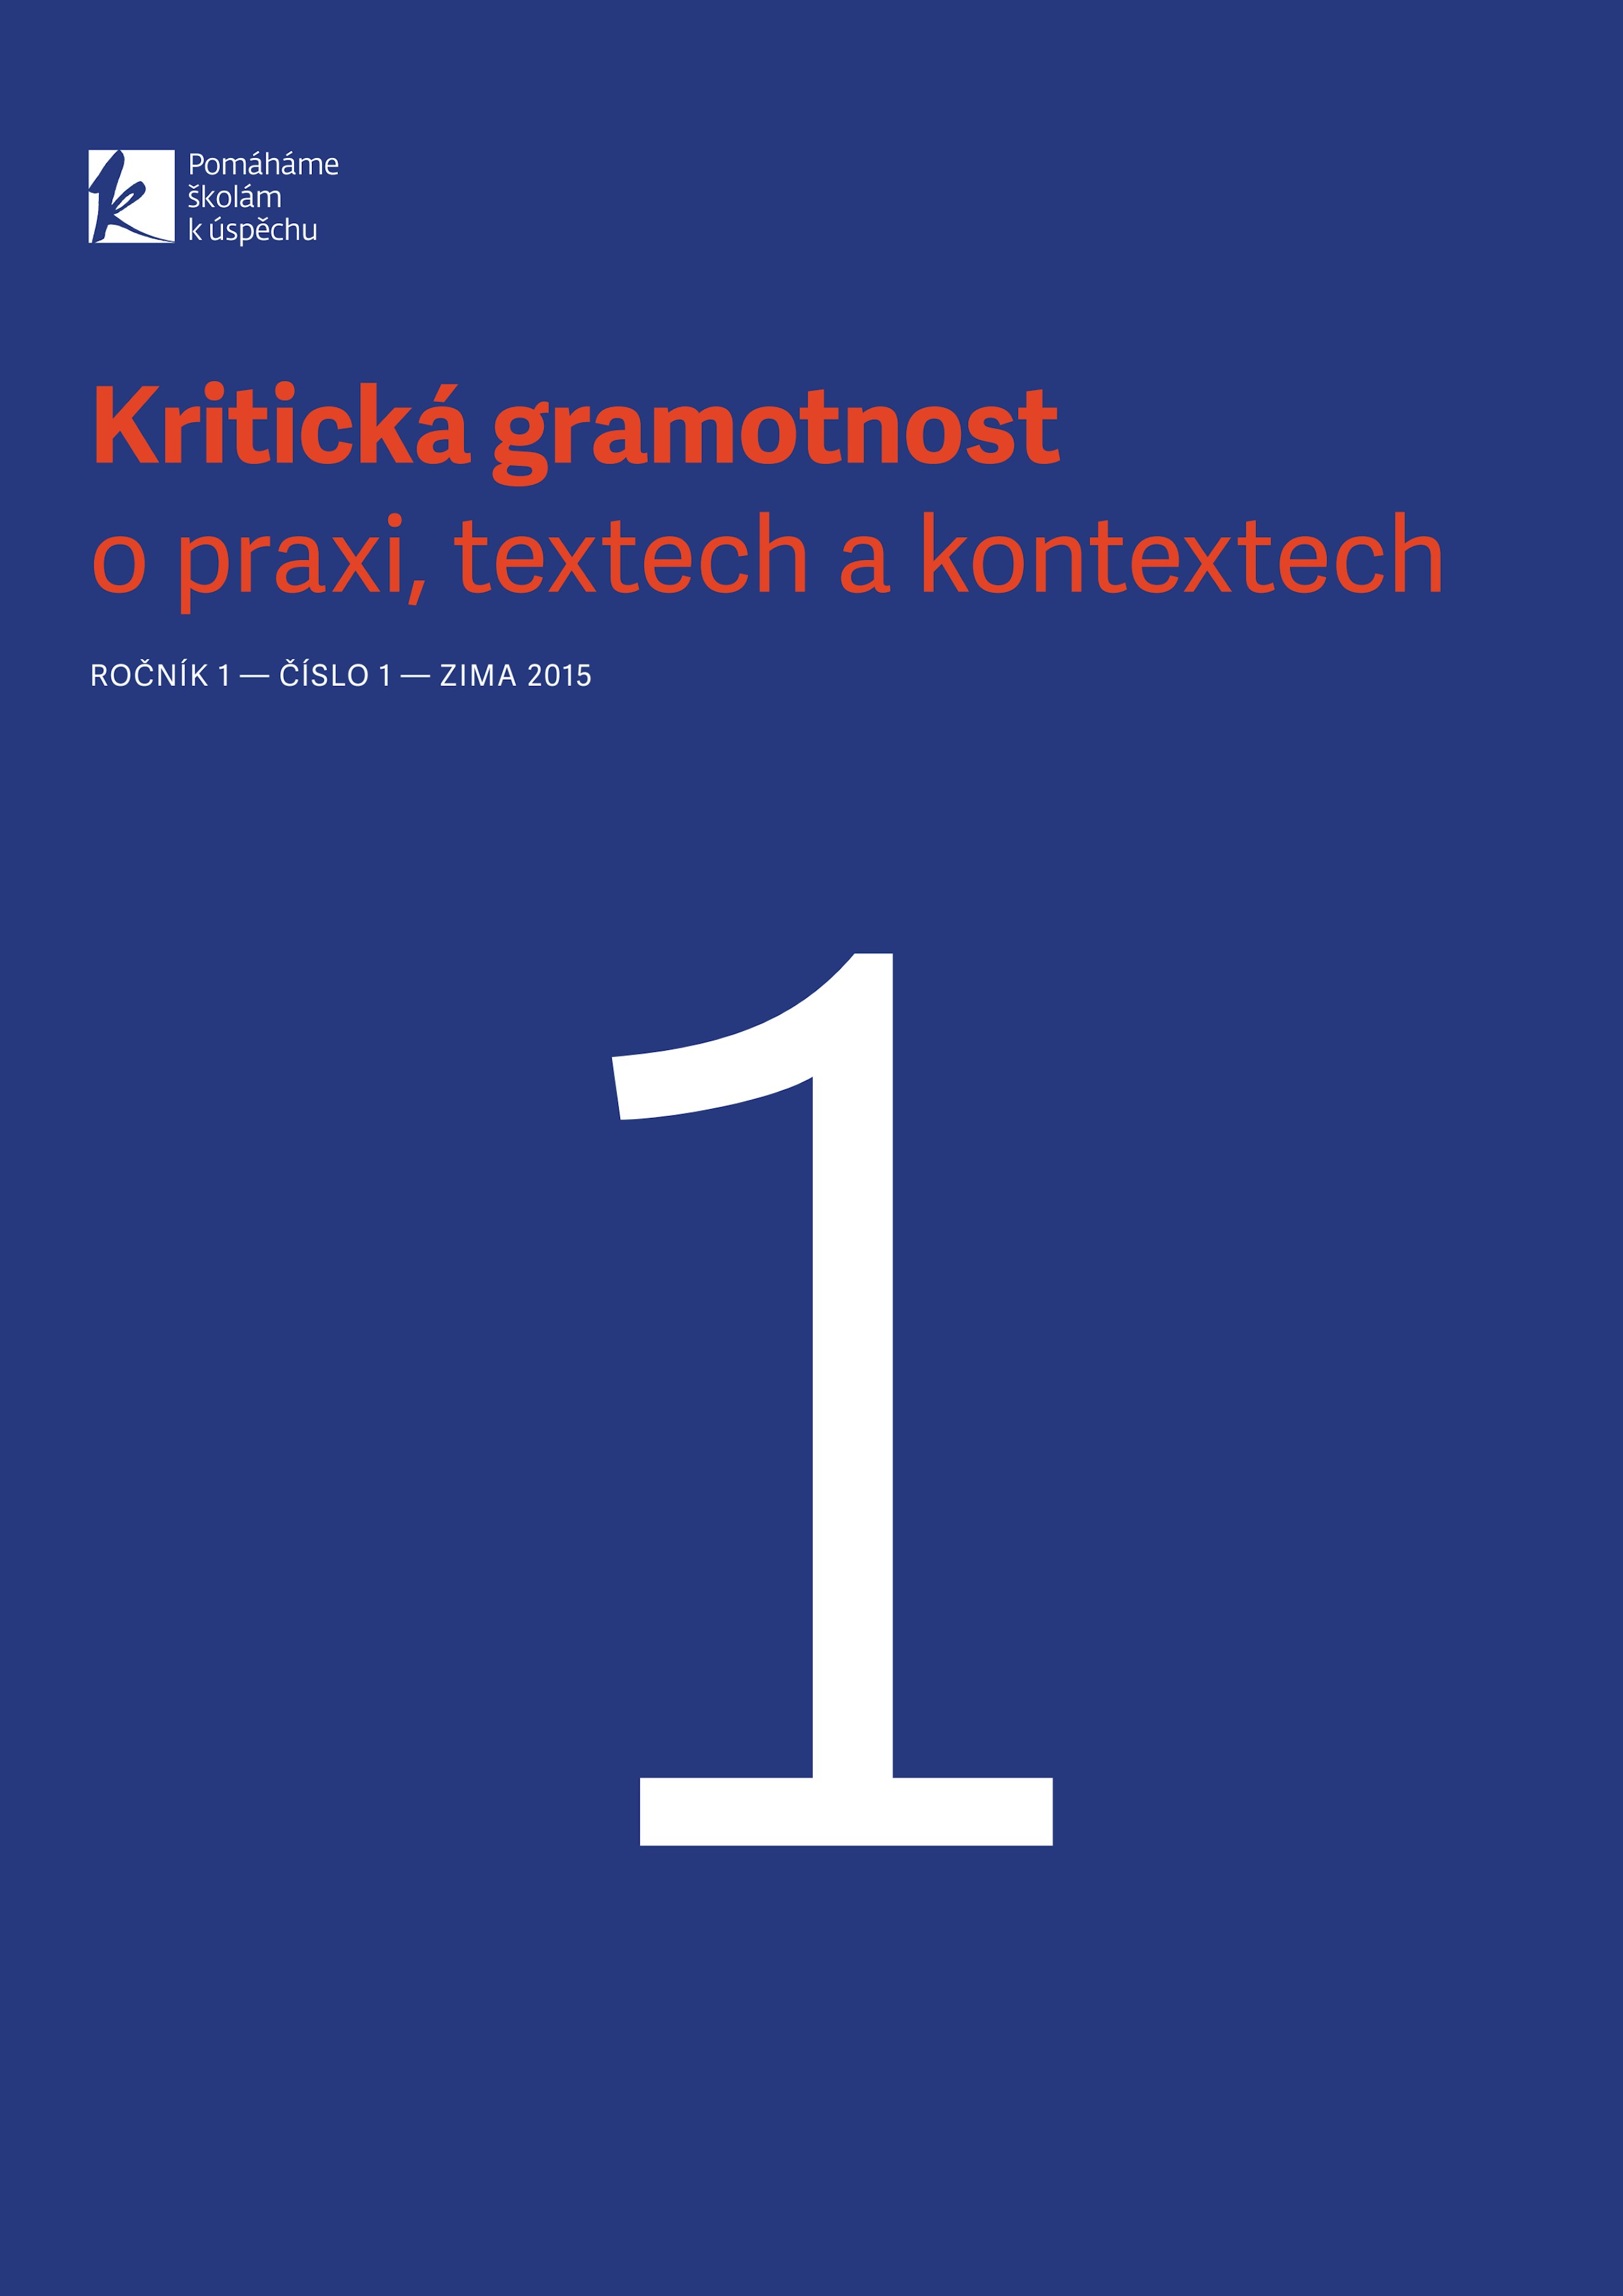 kriticka-gramotnost-2015-1.pdf